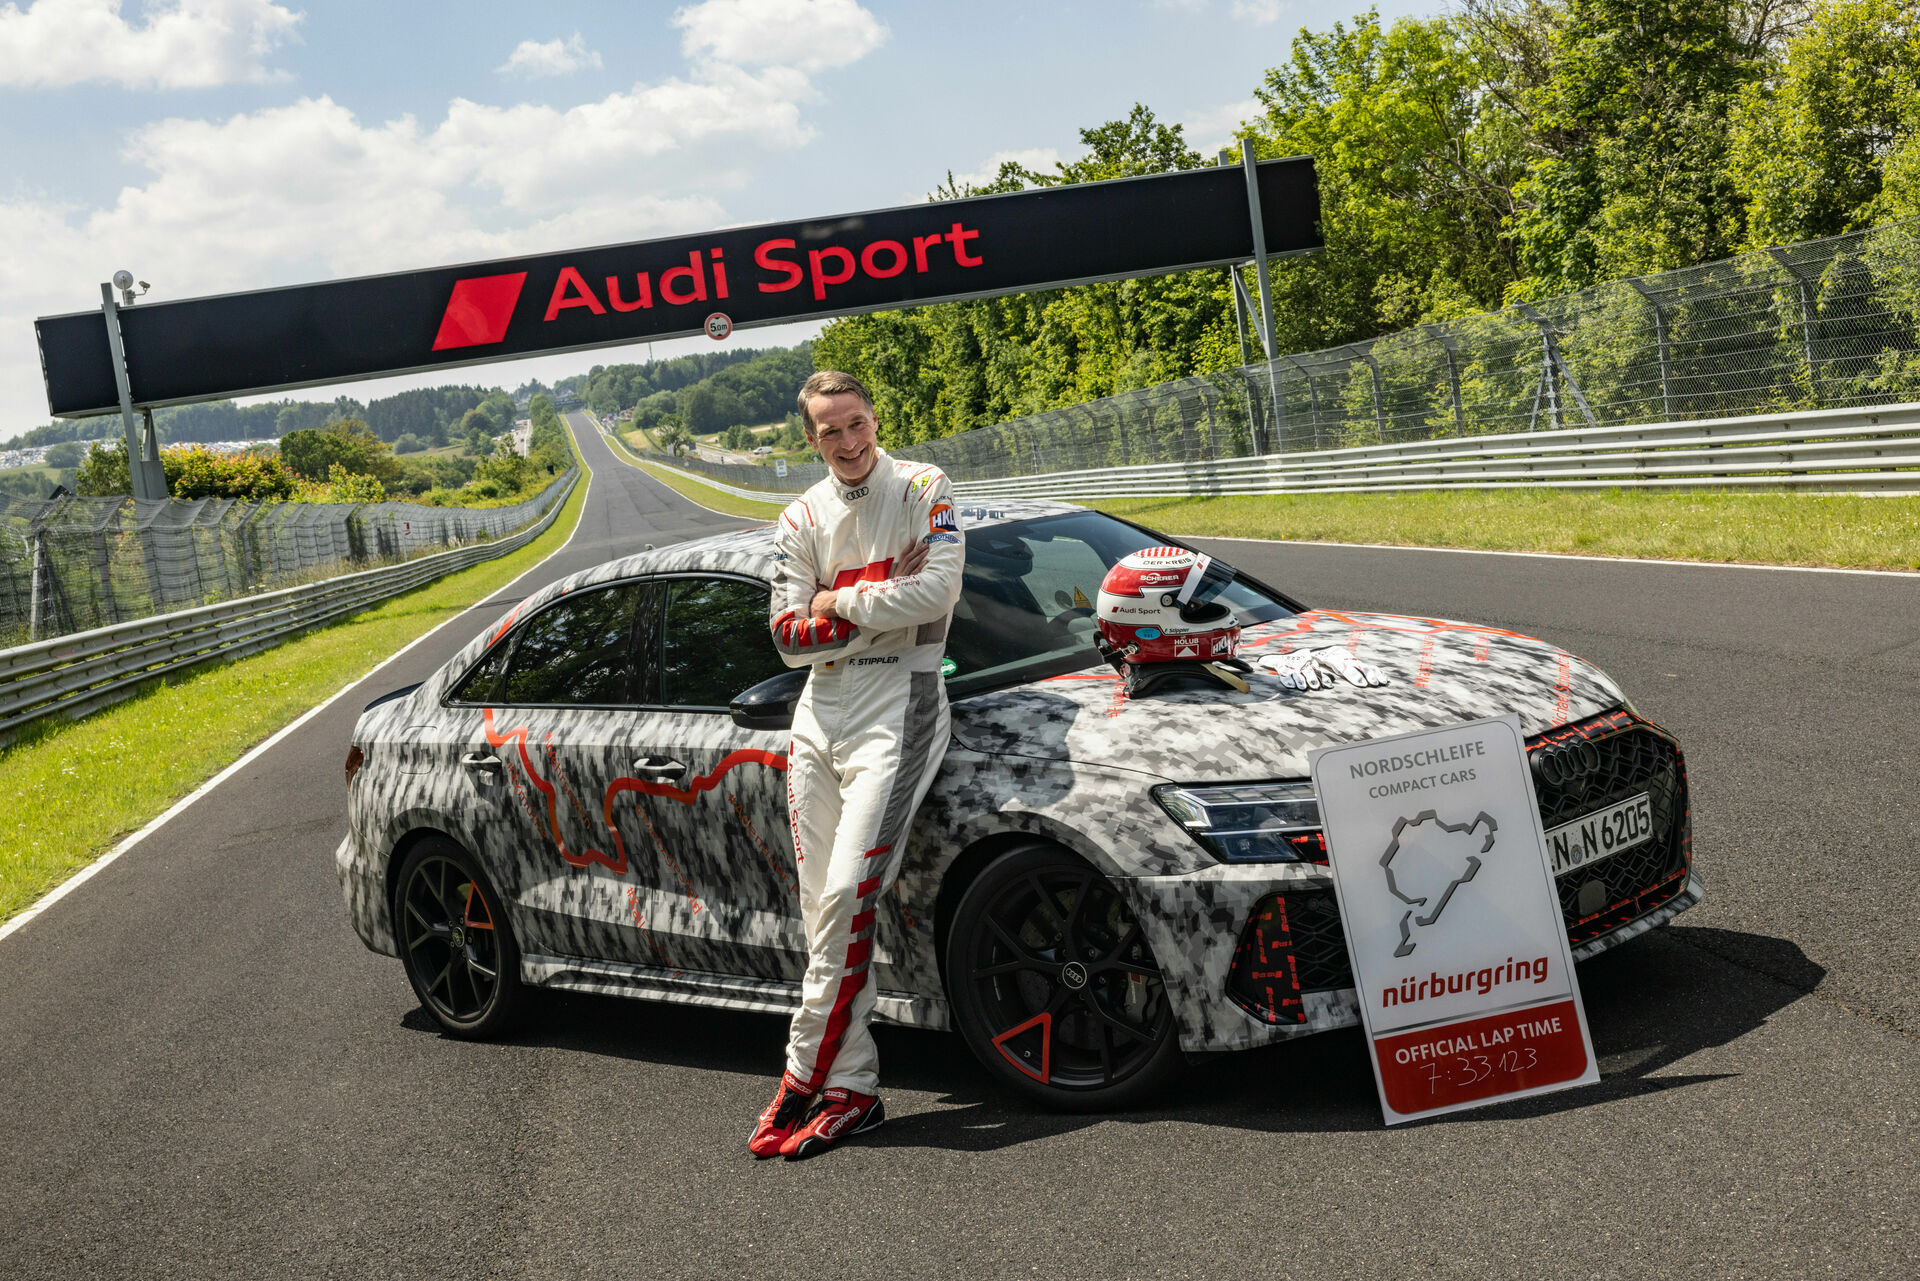 Há um novo recorde de volta mais rápida para a Audi Sport no circuito de Nürburgring. Este foi o tempo batido